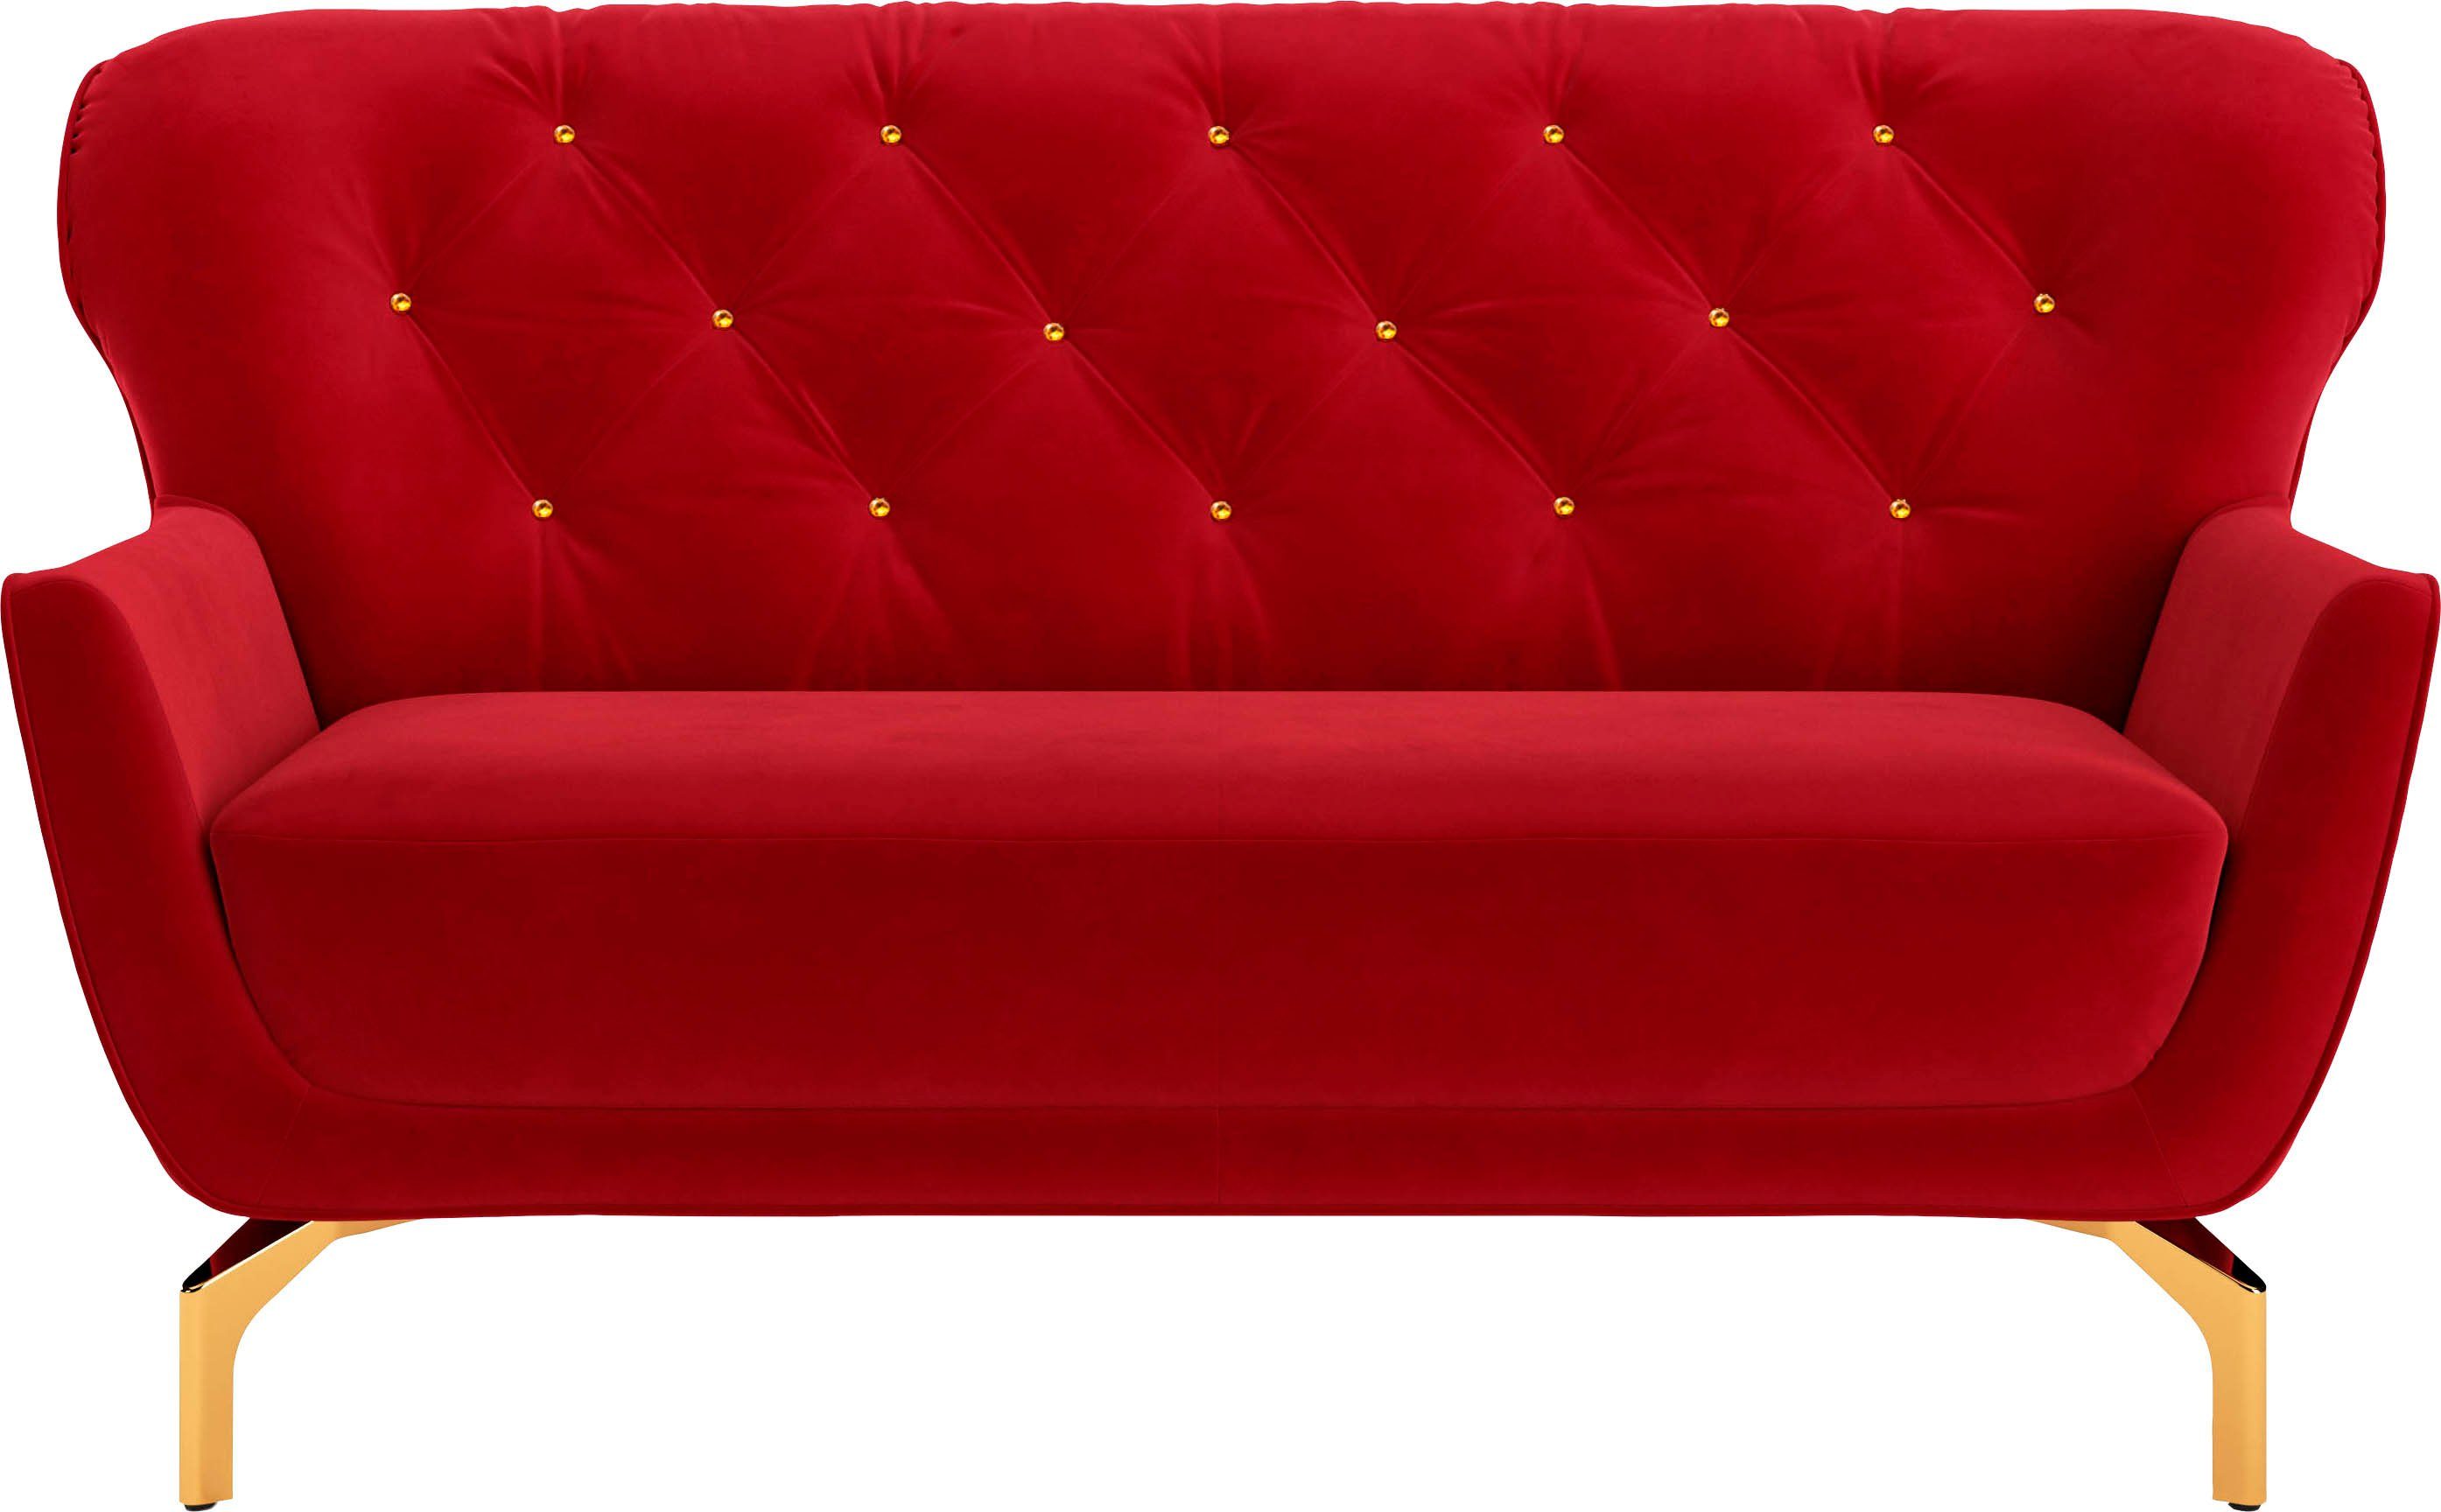 sit&more 2-Sitzer Orient 3 V, inkl. 2 Zierkissen mit Strass-Stein, goldfarbene Metallfüße